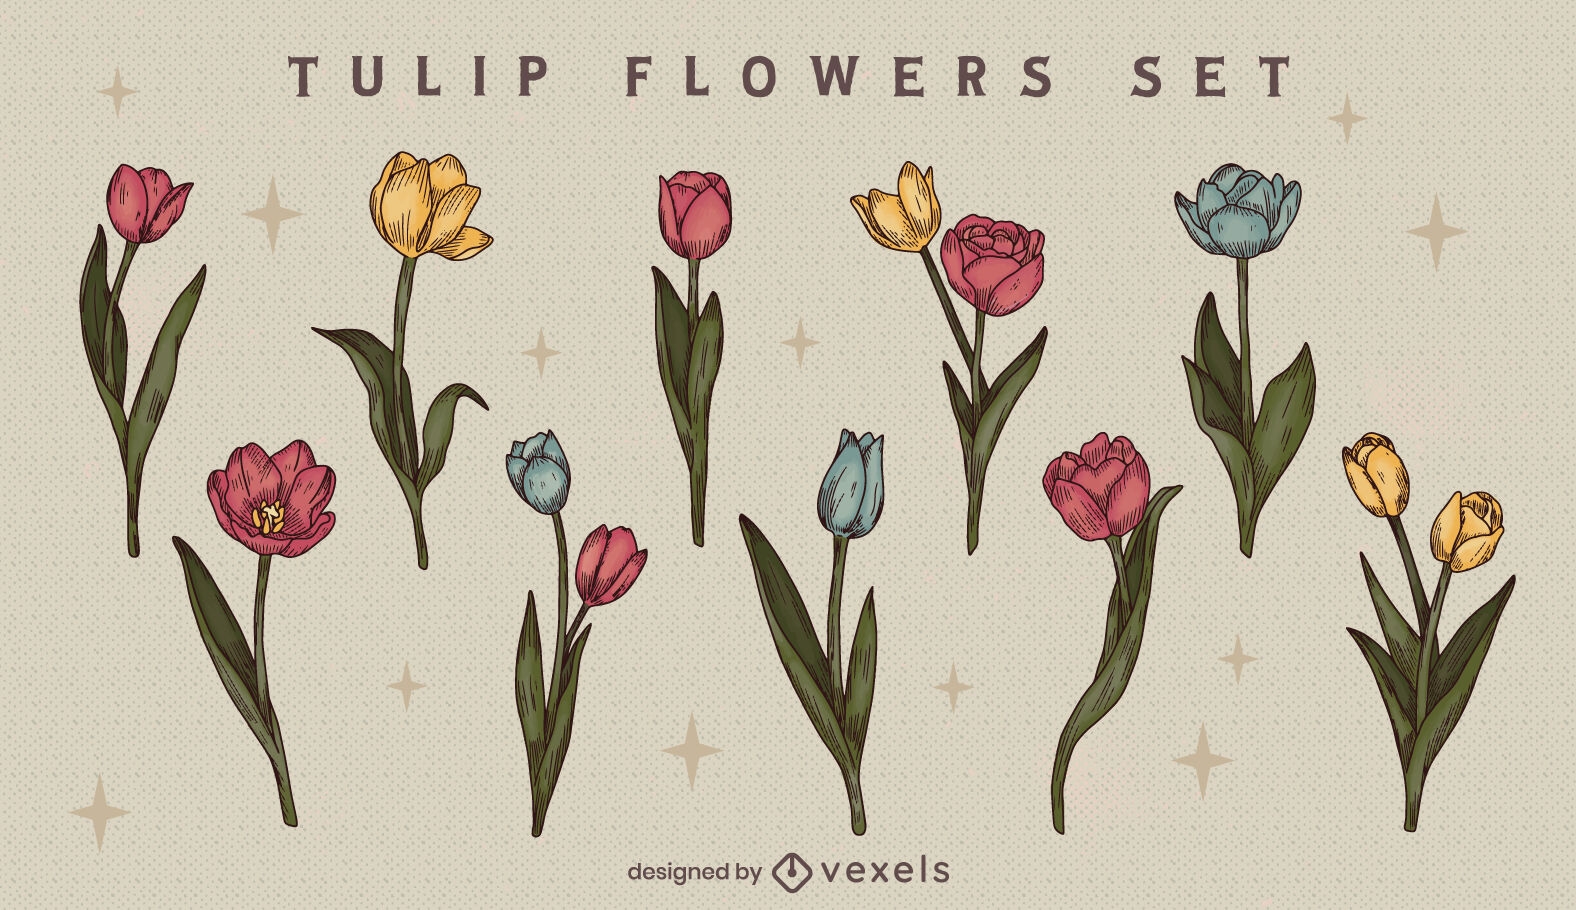 Tulip flowers set design